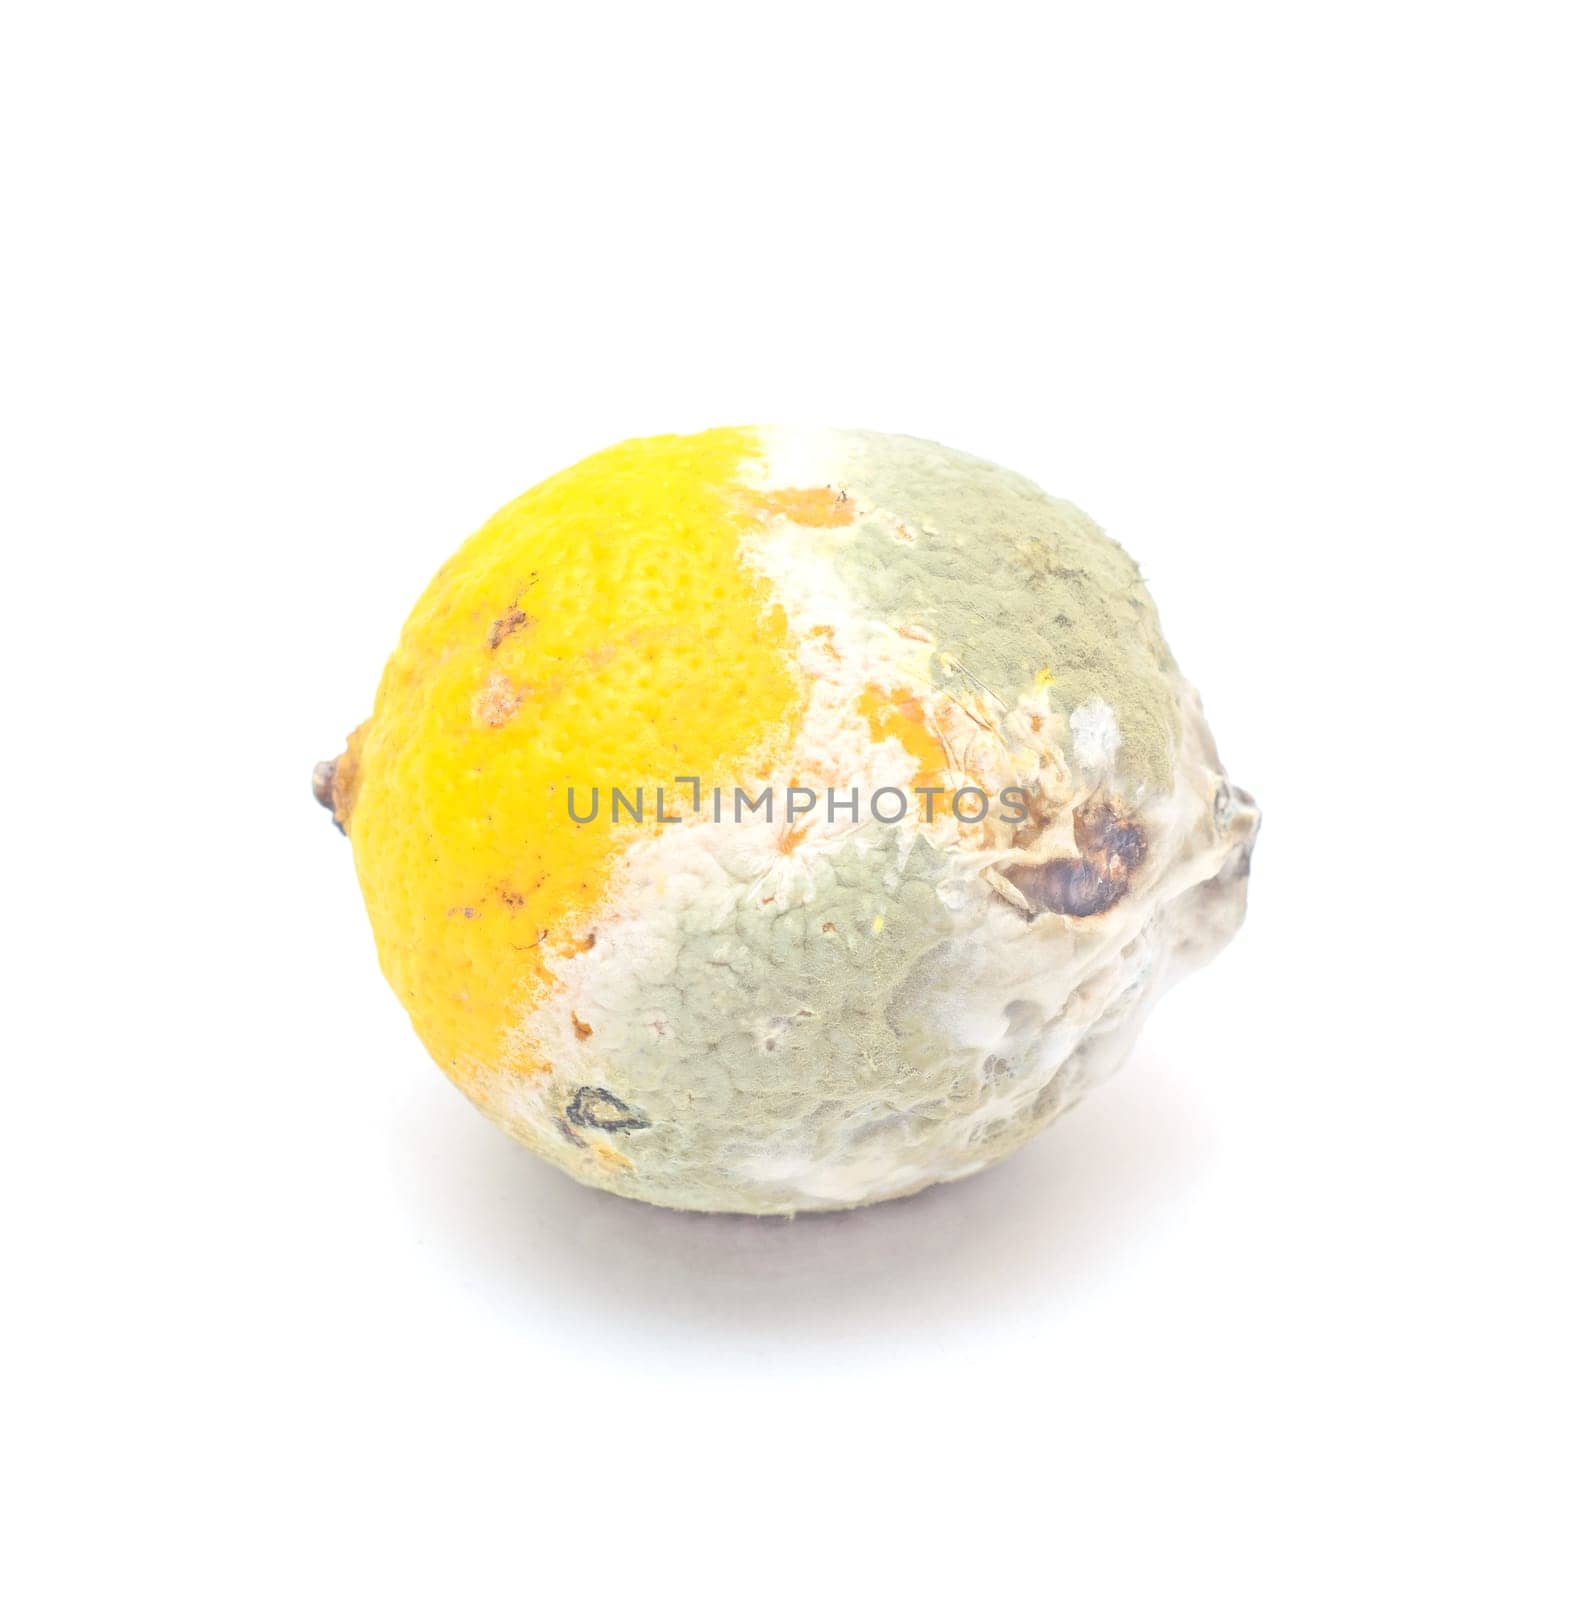 Ugly food.Moldy lemon isolated on white background.